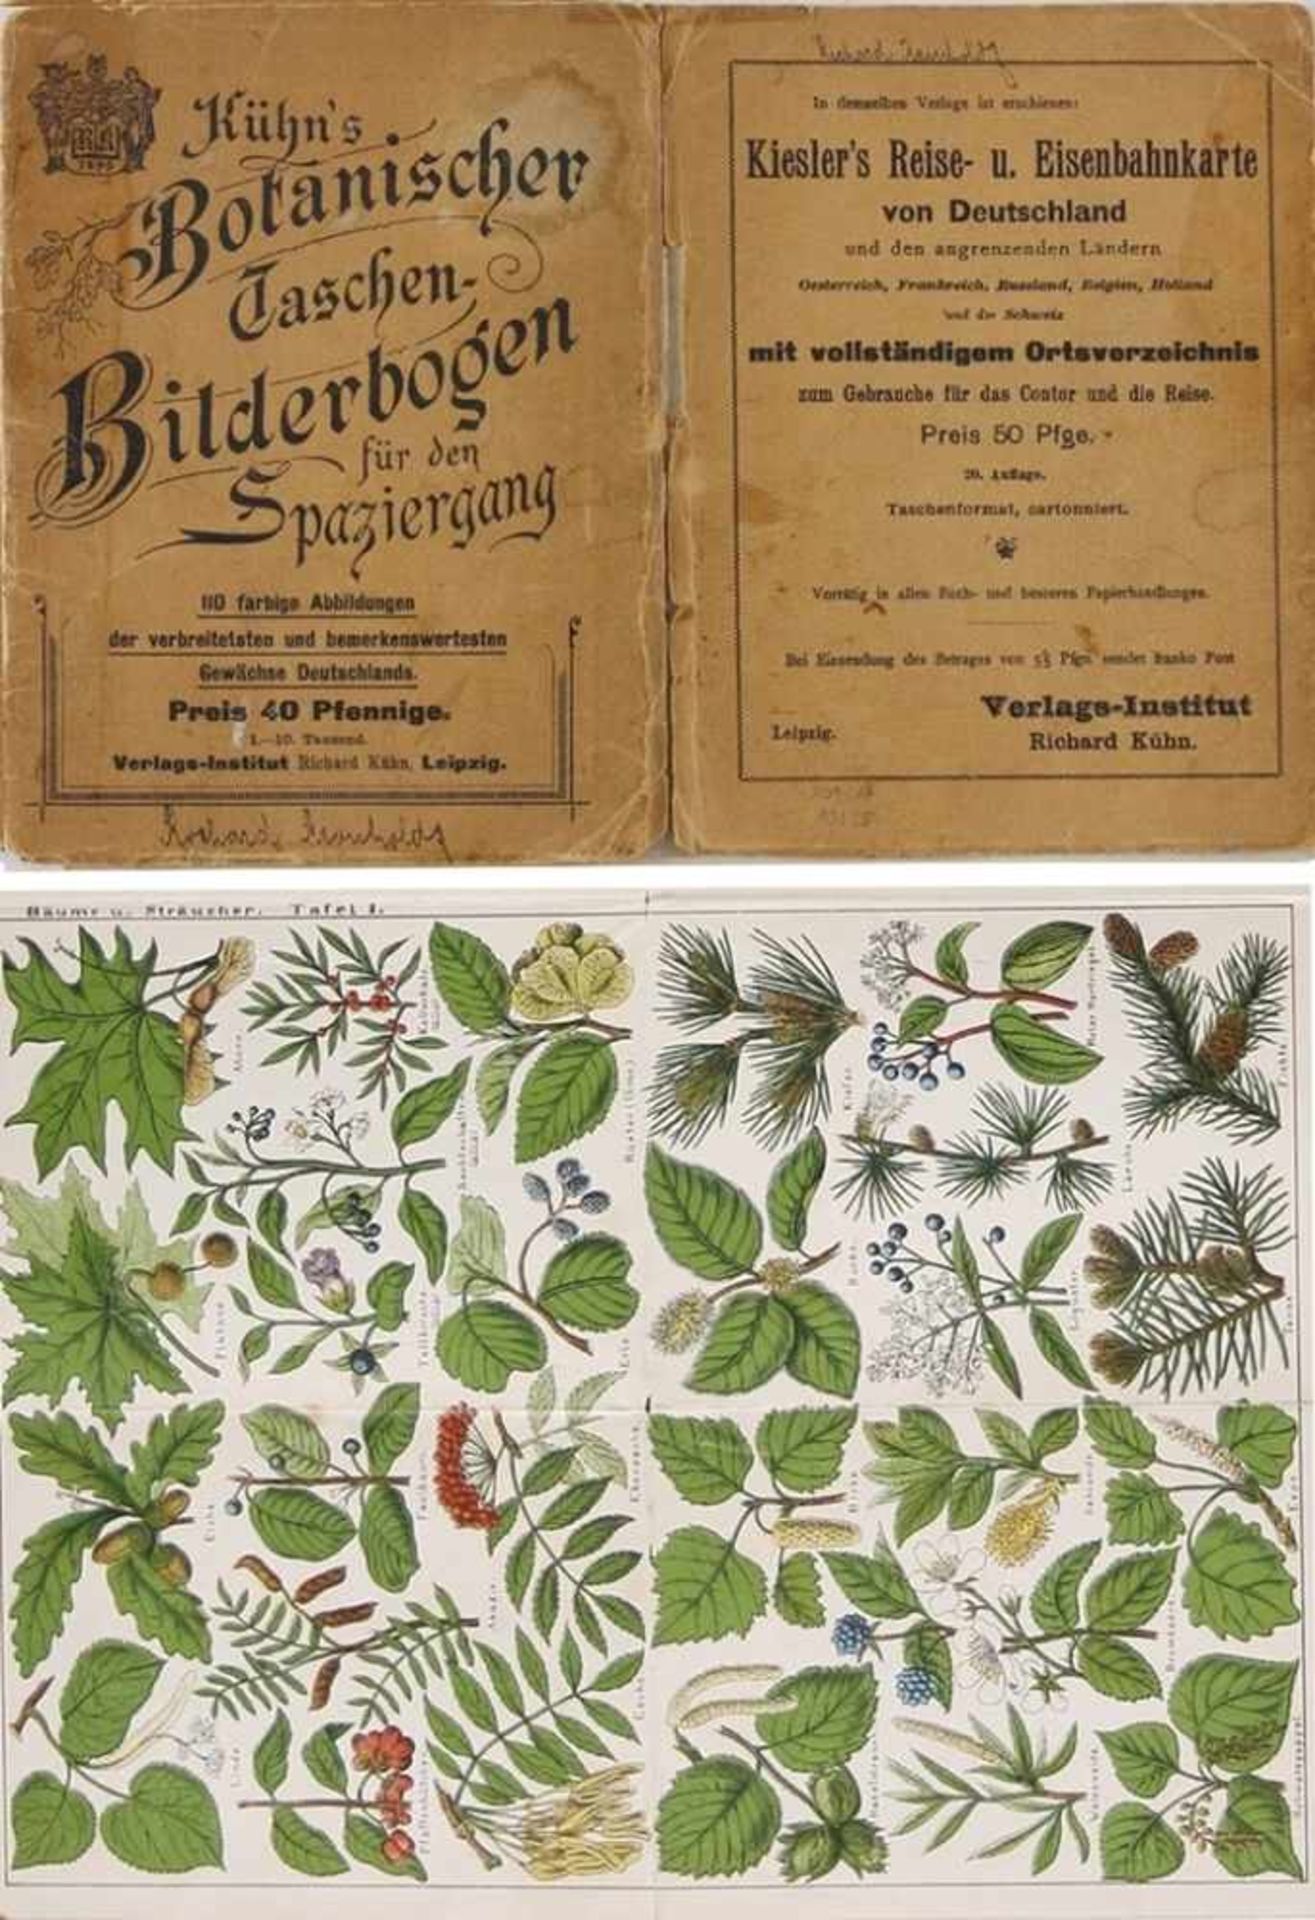 "Botanischer Taschen-Bilderbogen für den Spaziergang" "..110 farbige Abbildungen der